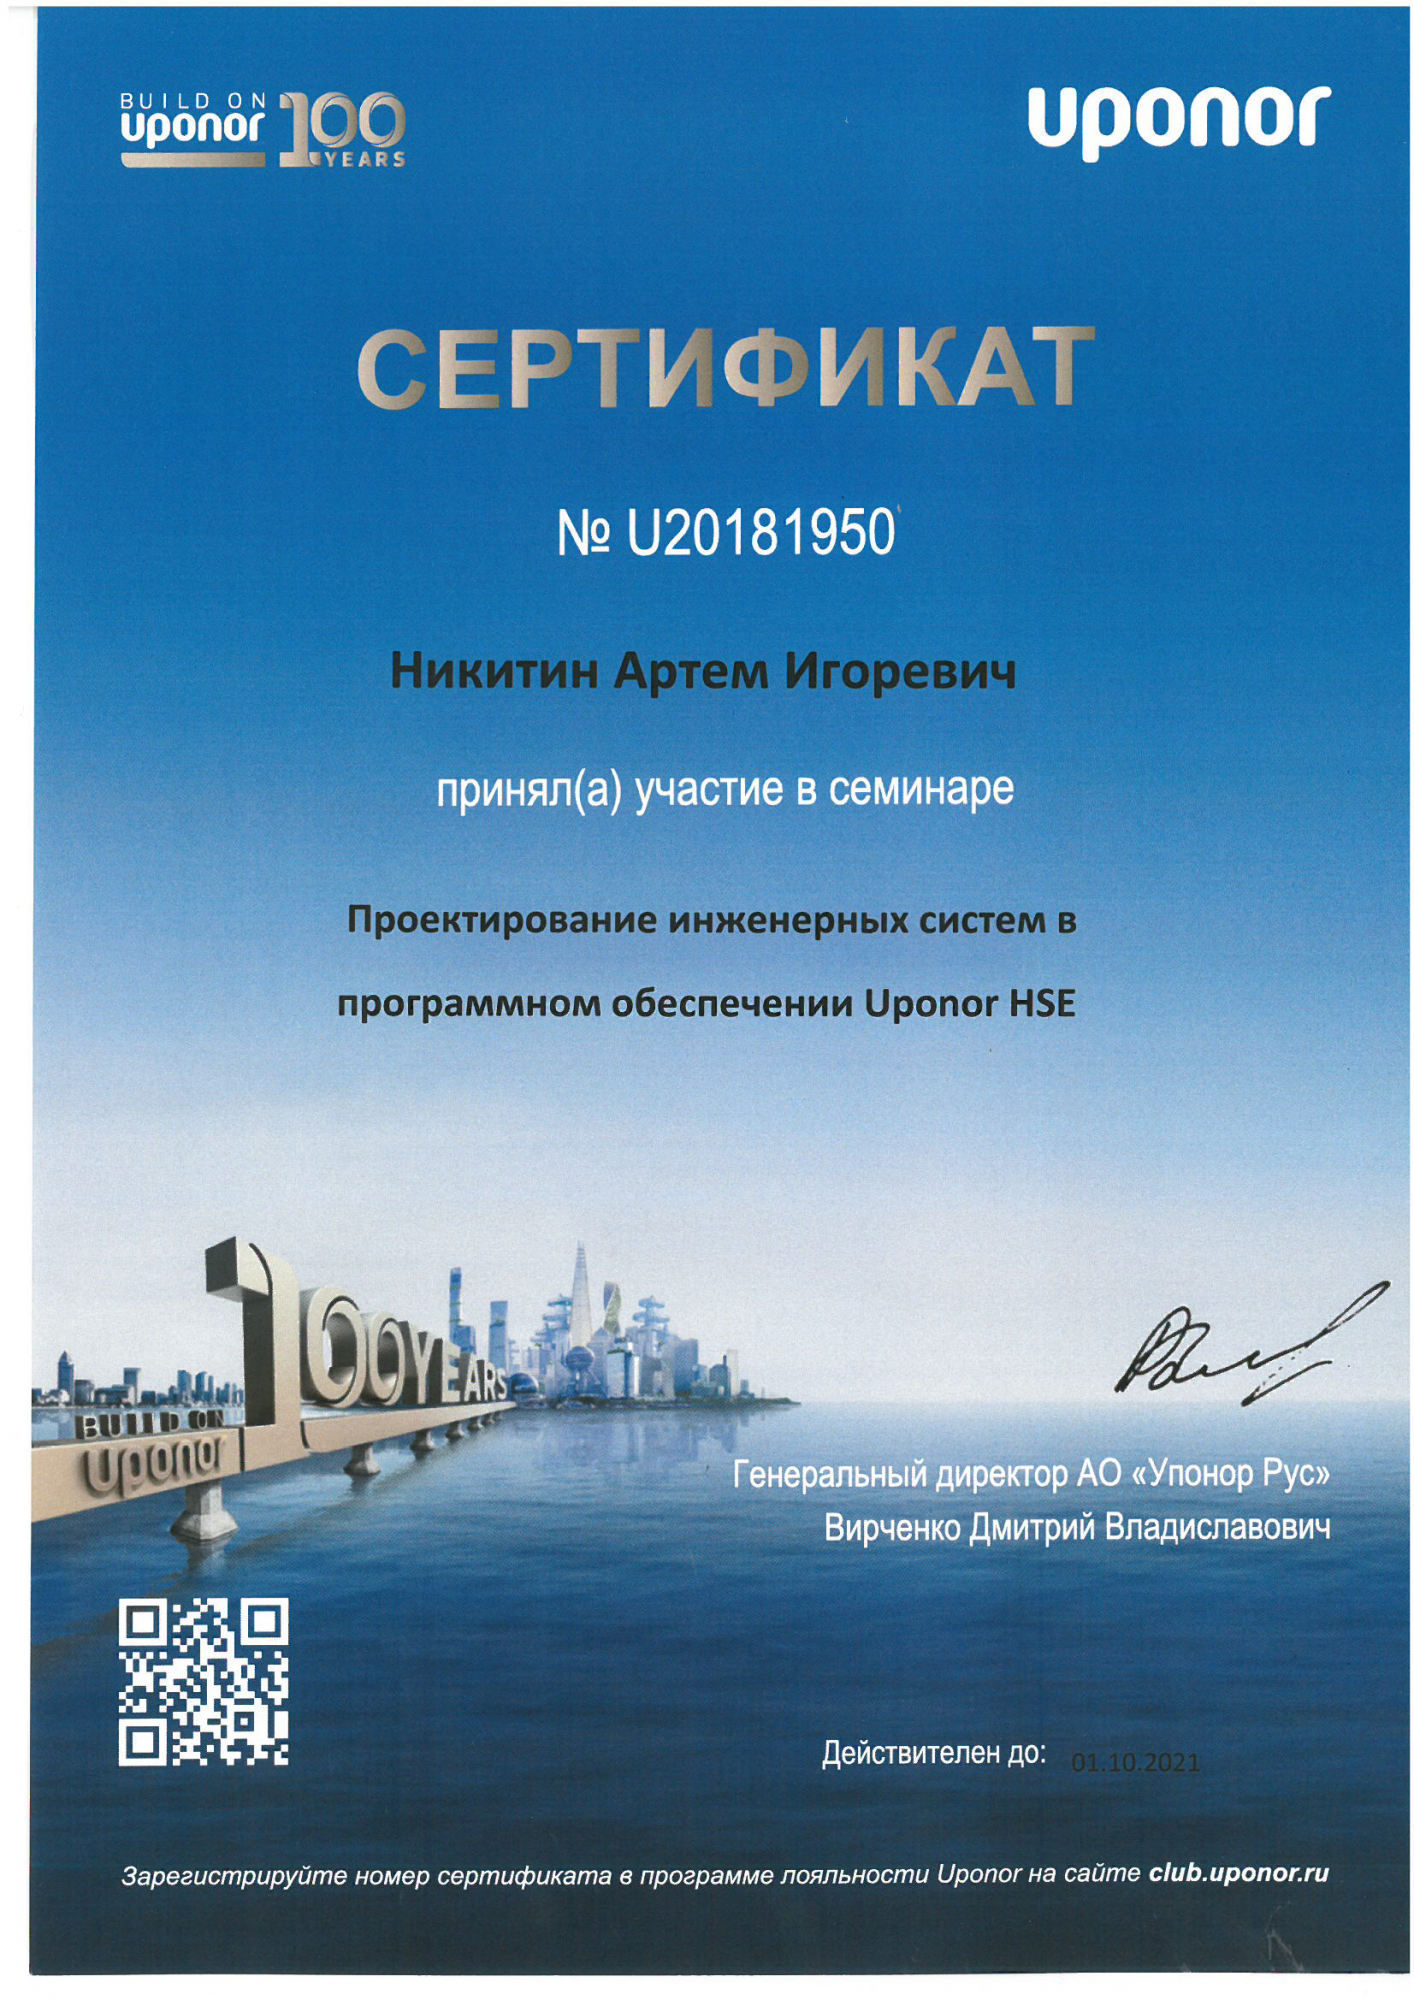 Сертификат Uponor HSE